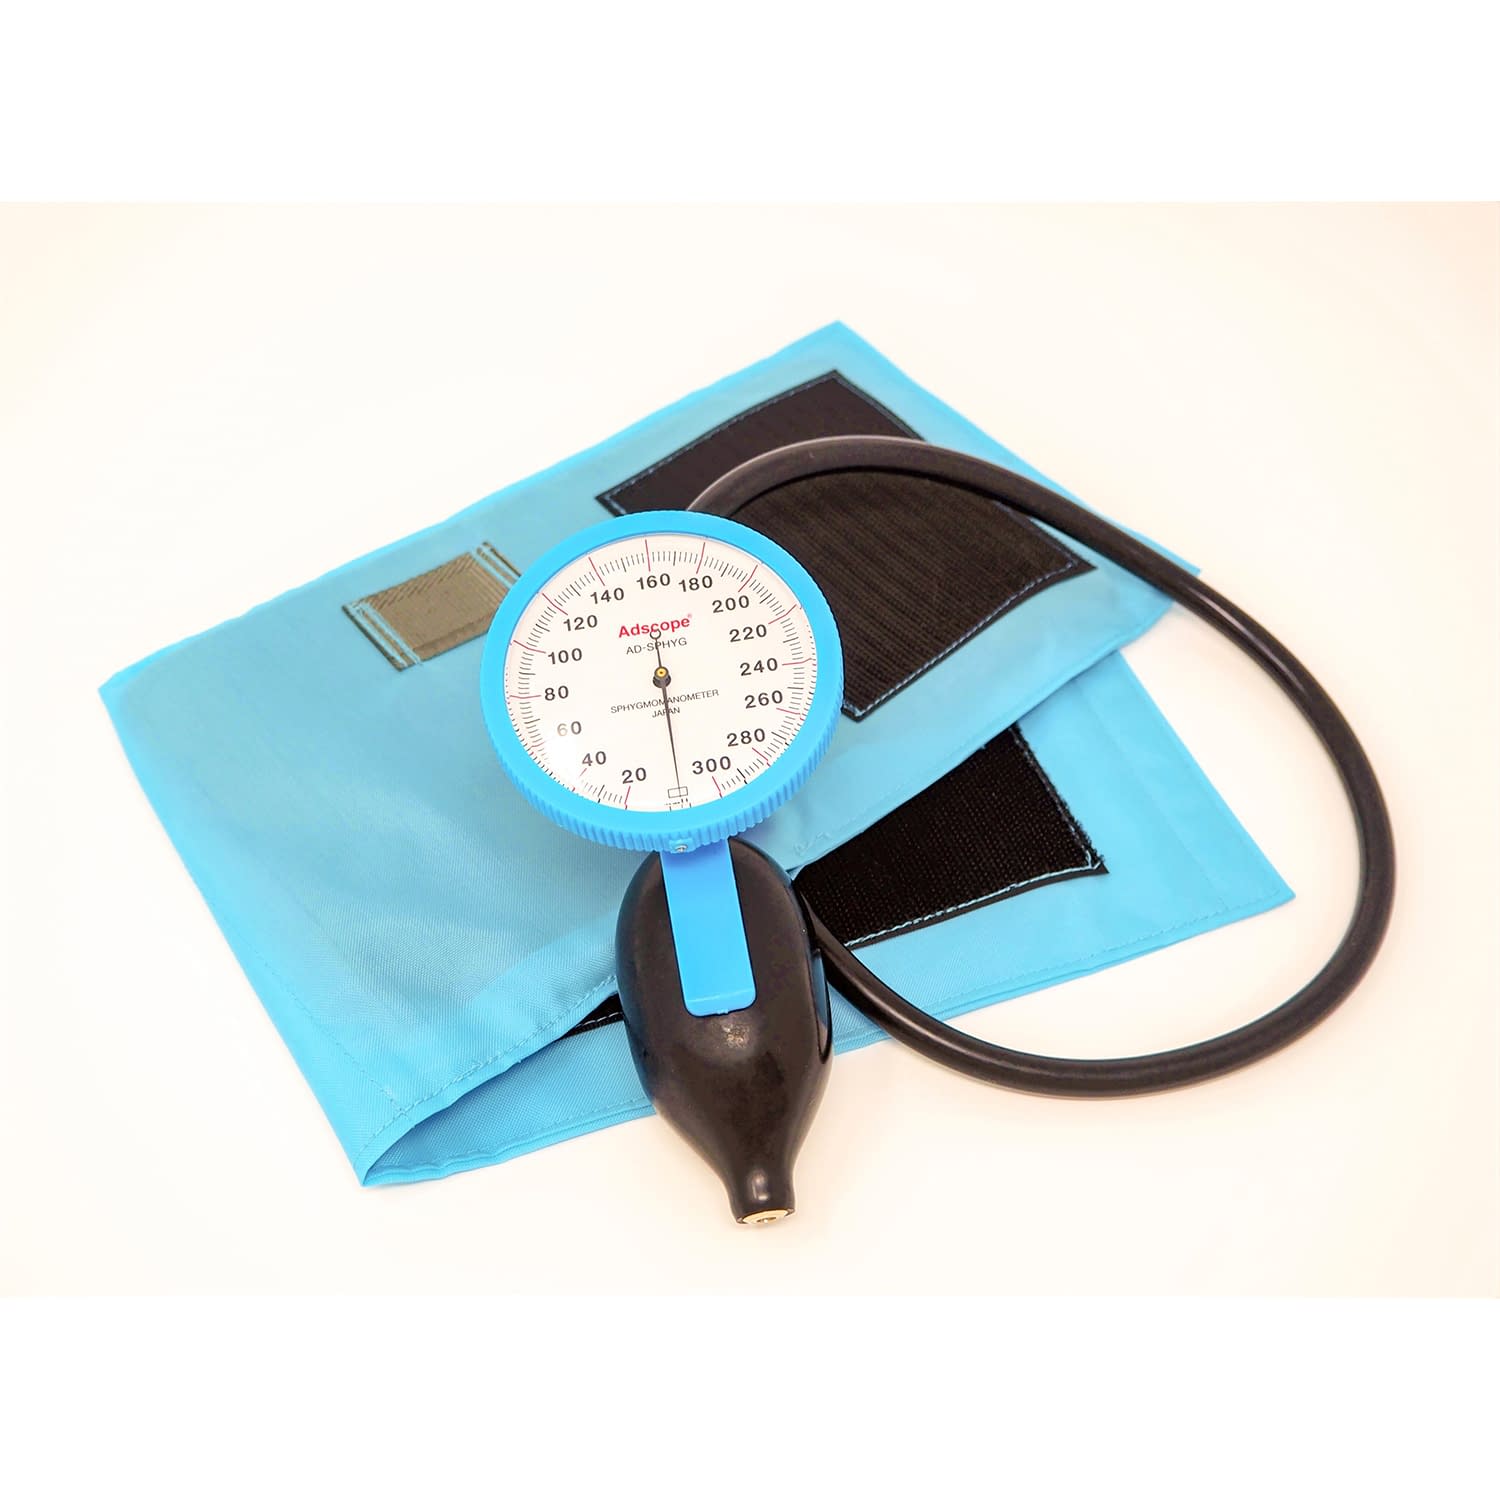 ユーメド貿易 ラージゲージアネロイド血圧計ADC-226B(ﾌﾞﾙｰ)ﾜﾝﾊﾝﾄﾞ 売値